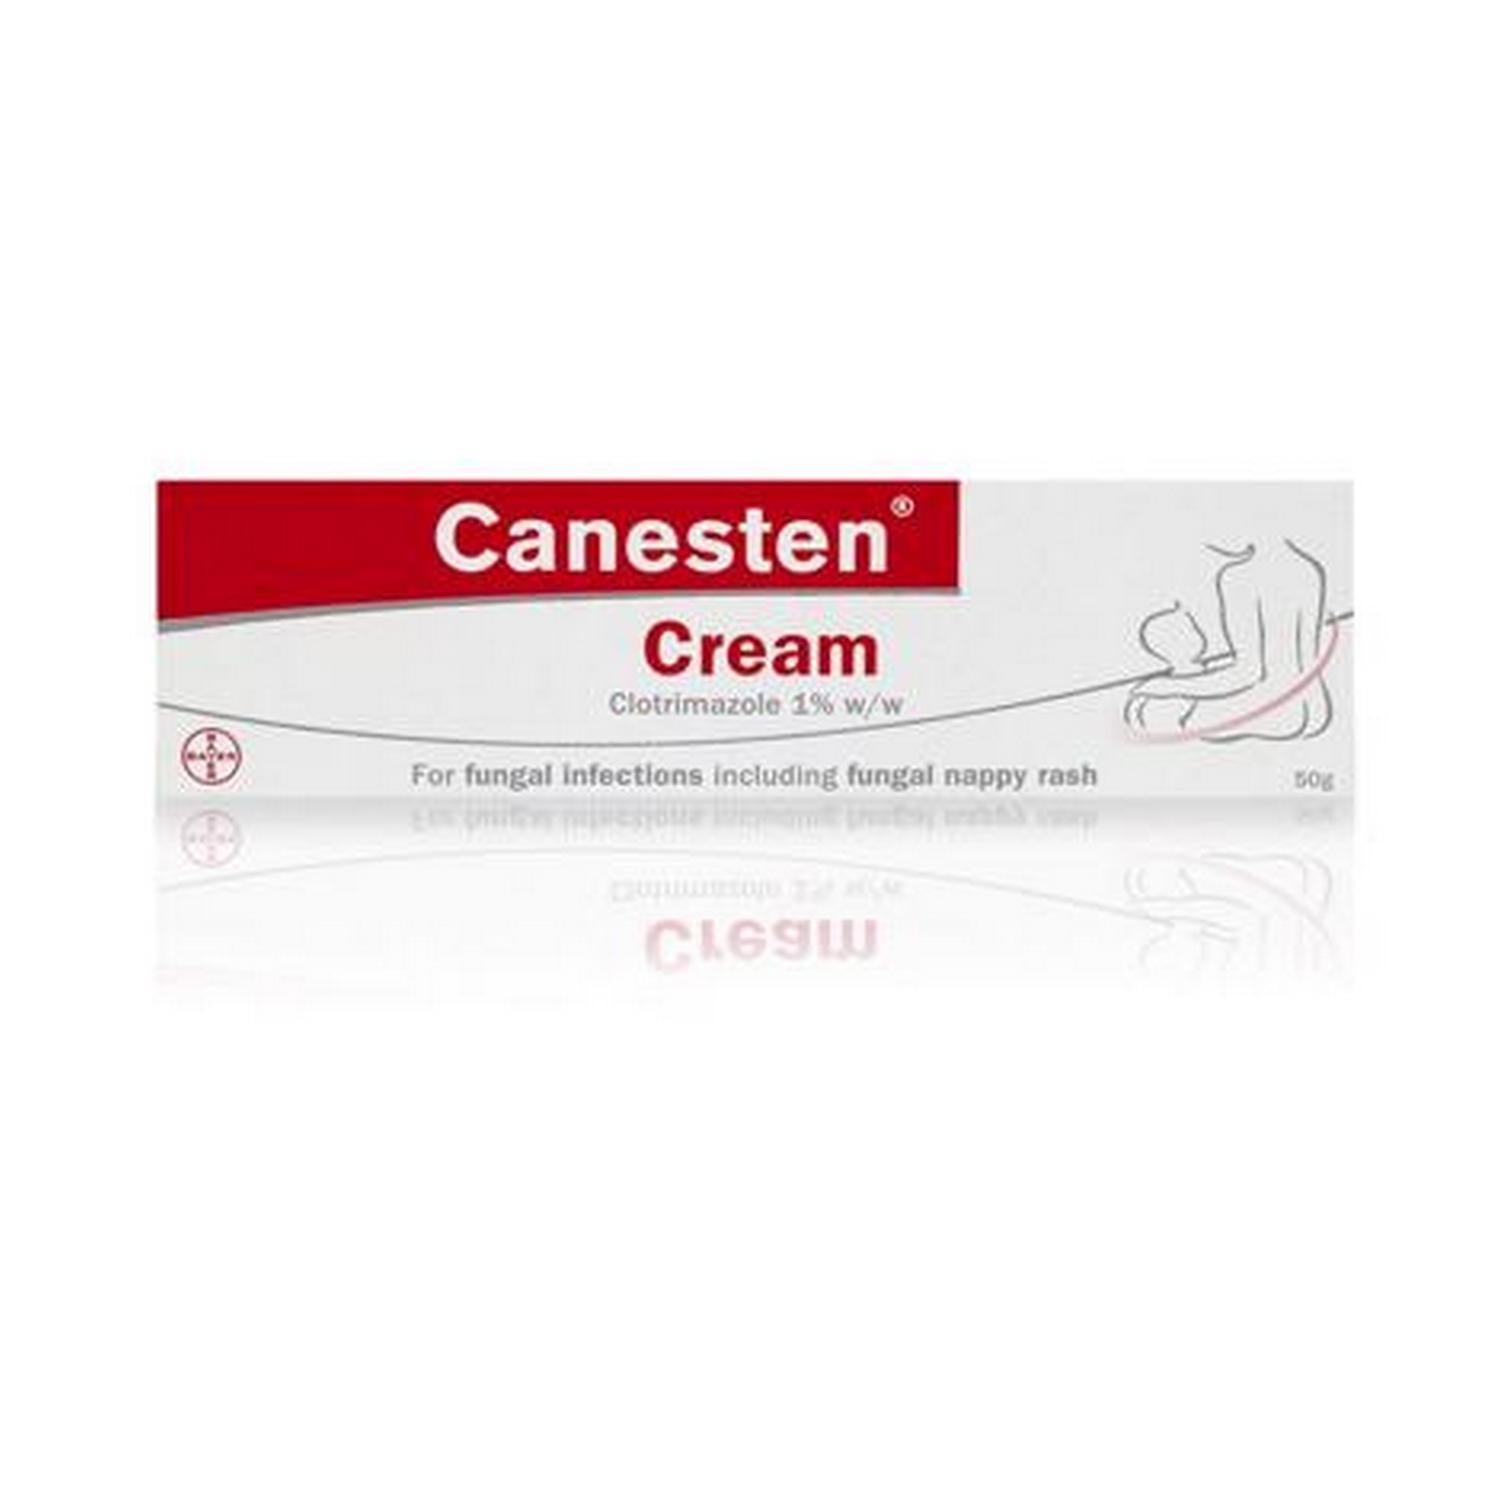 Canesten Cream 1% clotrimazole - 50g